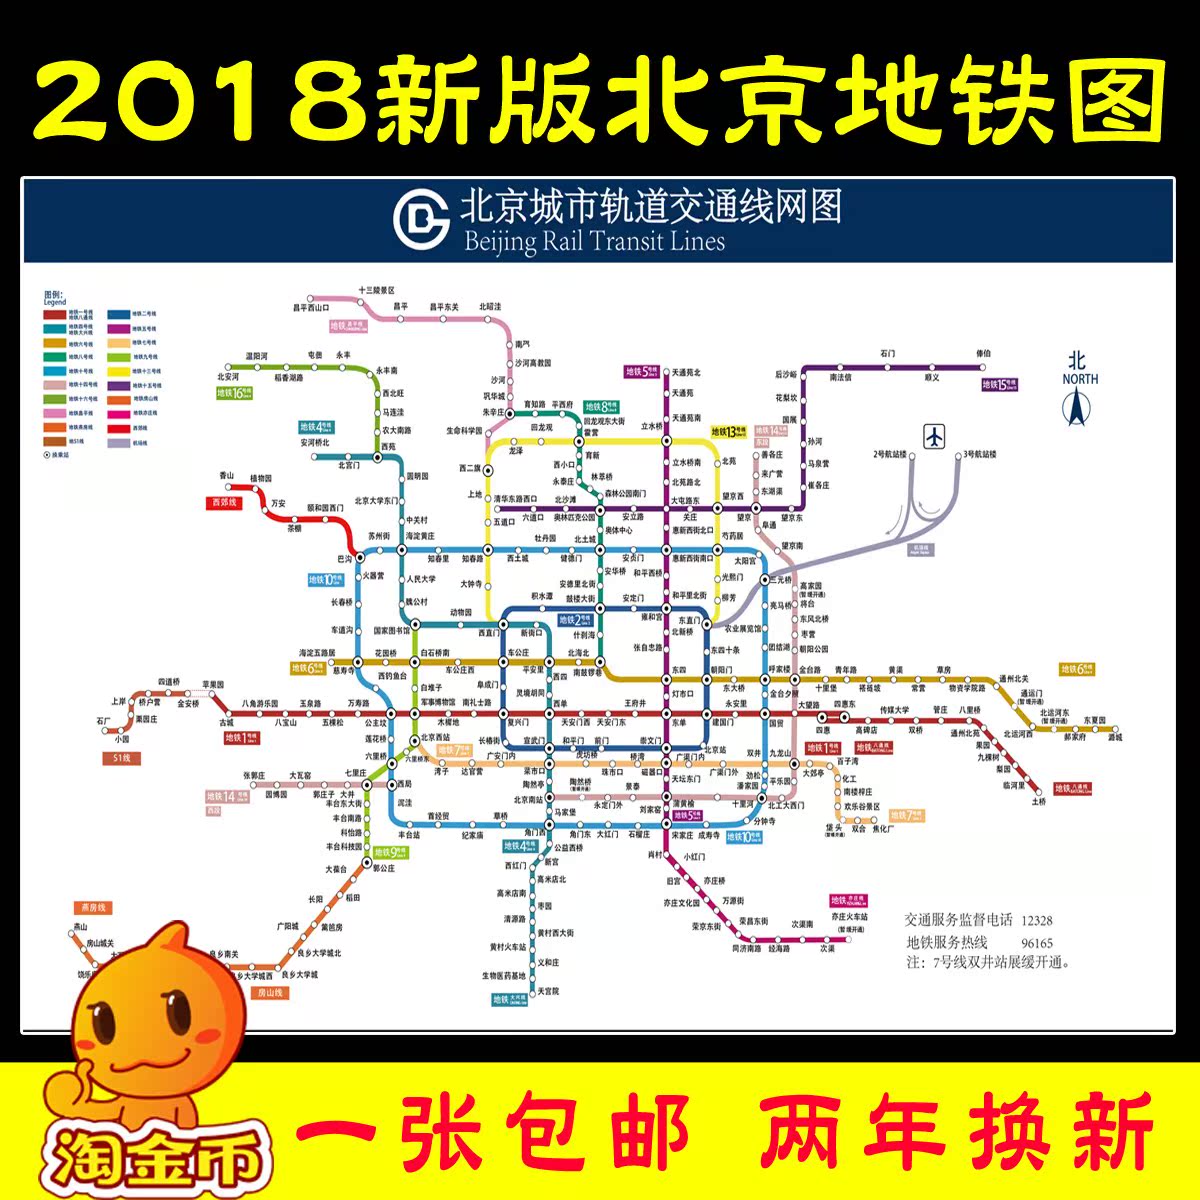 北京交通地铁线路图2018新版 北京市地铁换乘路线示意图海报贴纸